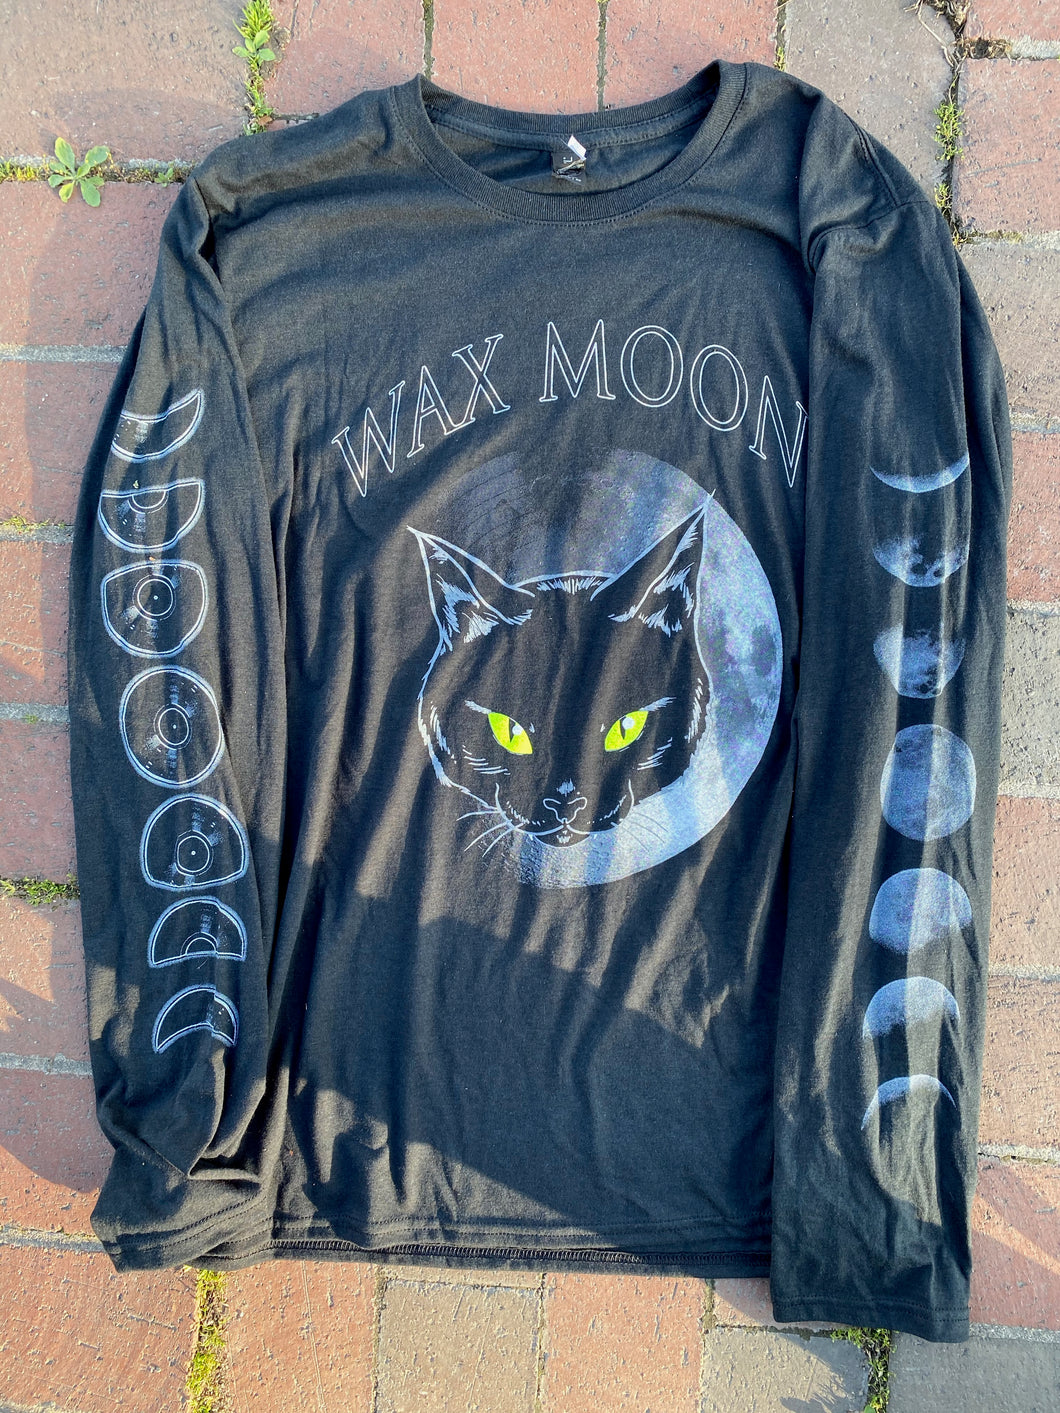 Wax Moon Longsleeve Shirt